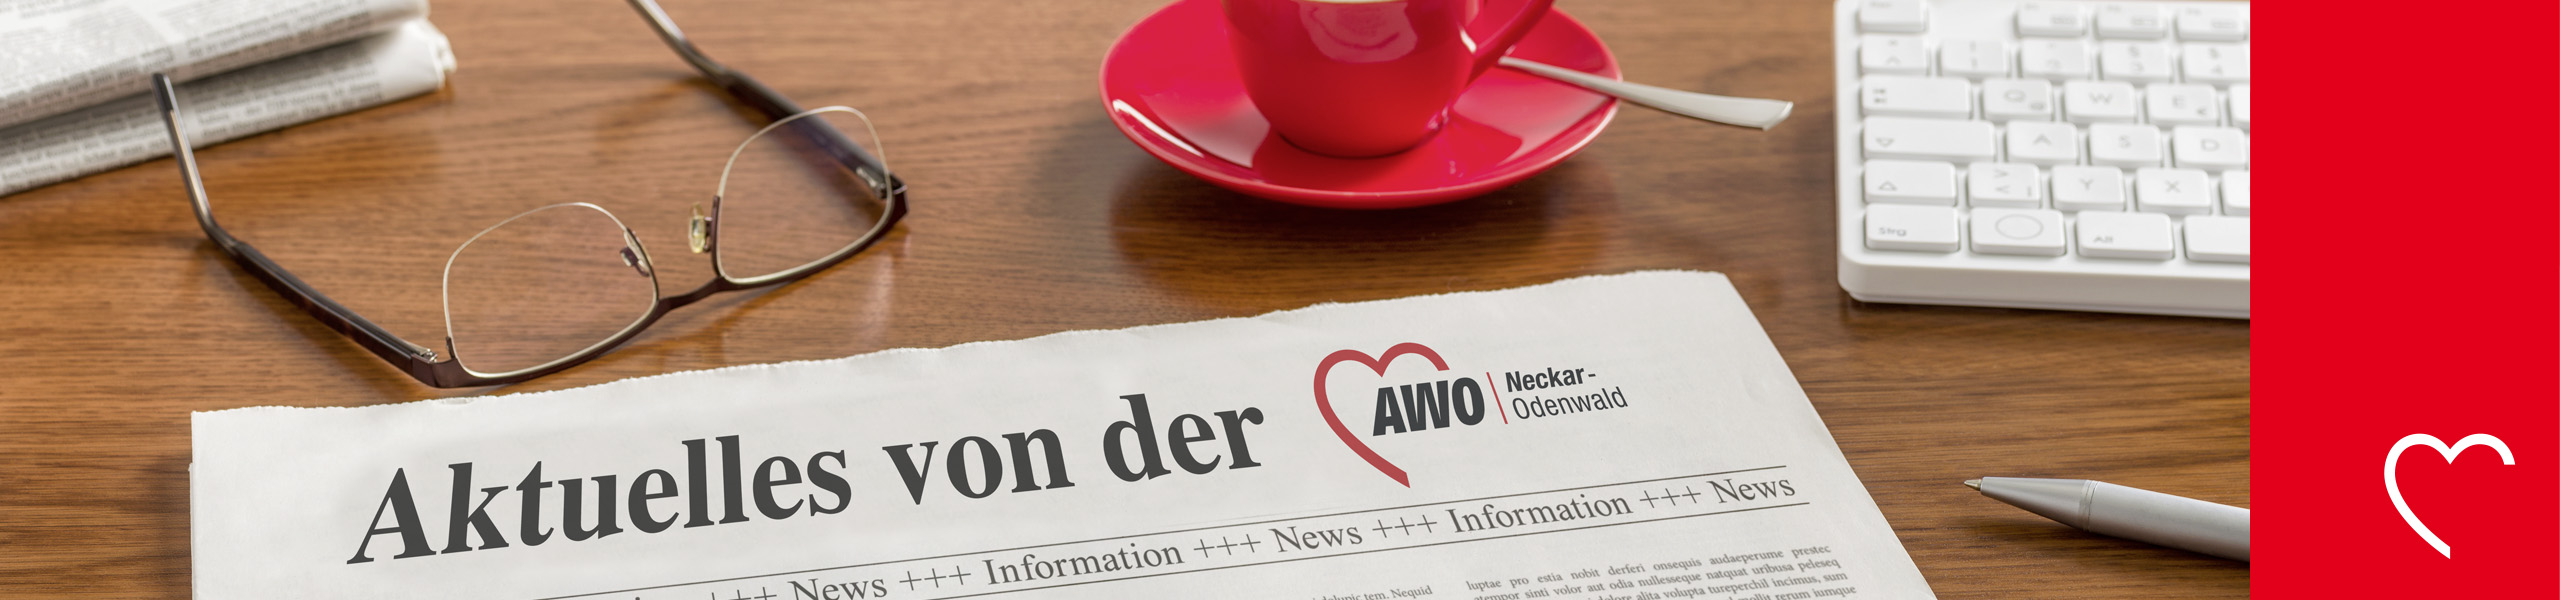 AWO Neckar-Odenwald gGmbH - Offen für alle